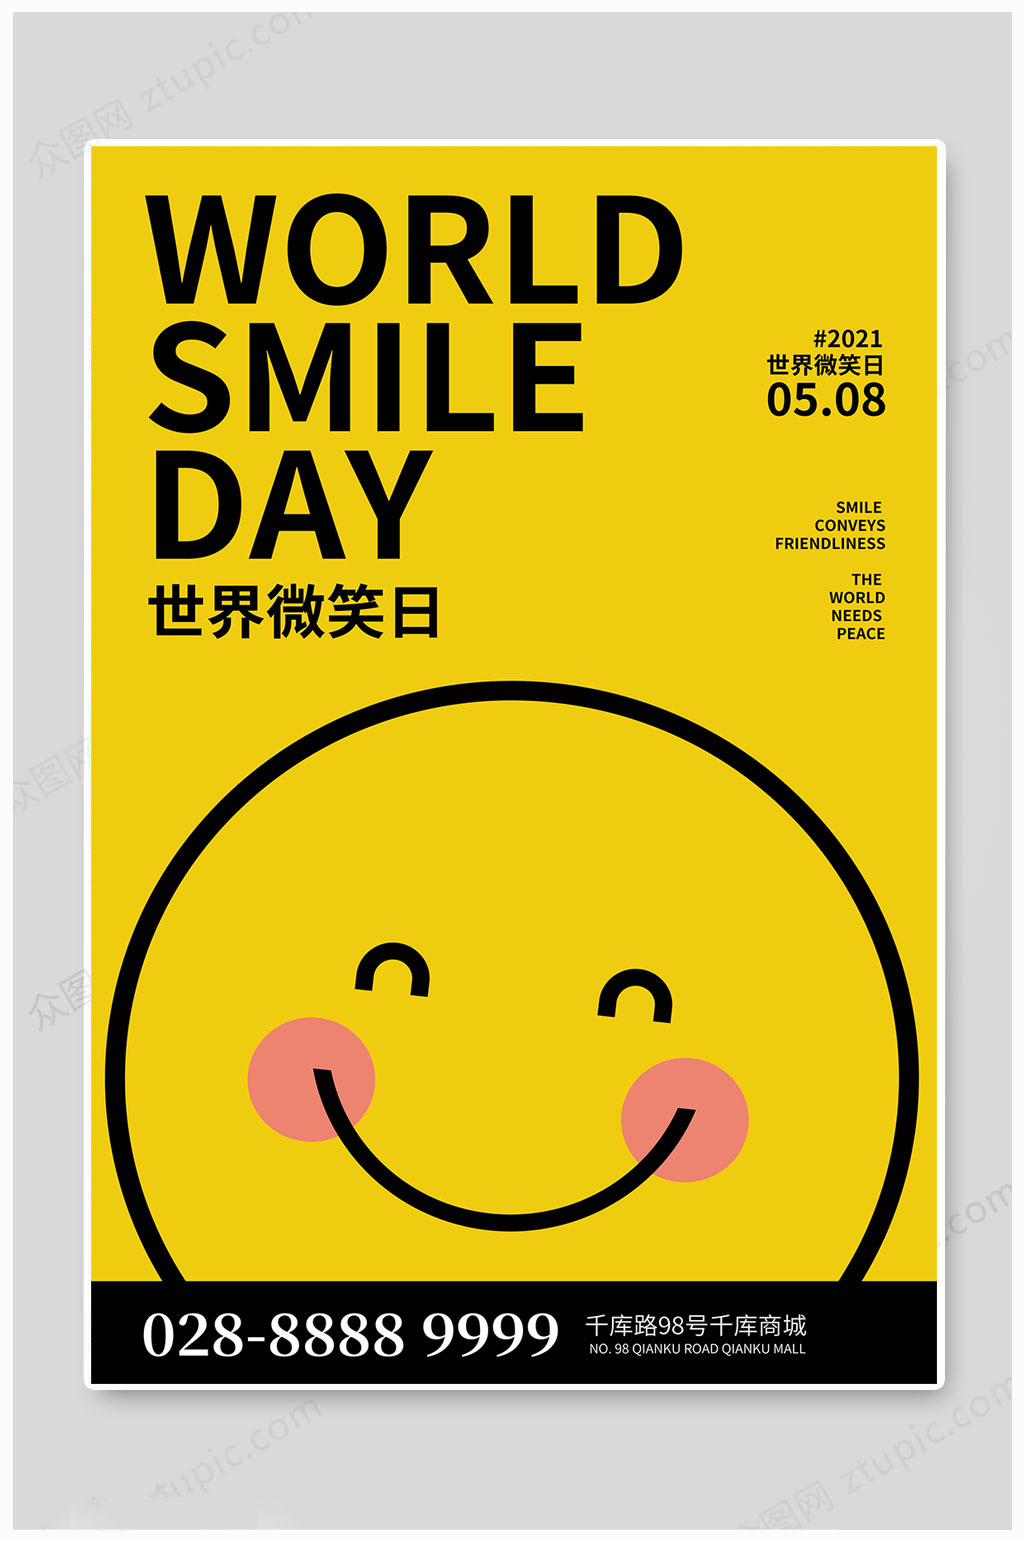 国际微笑日海报图片